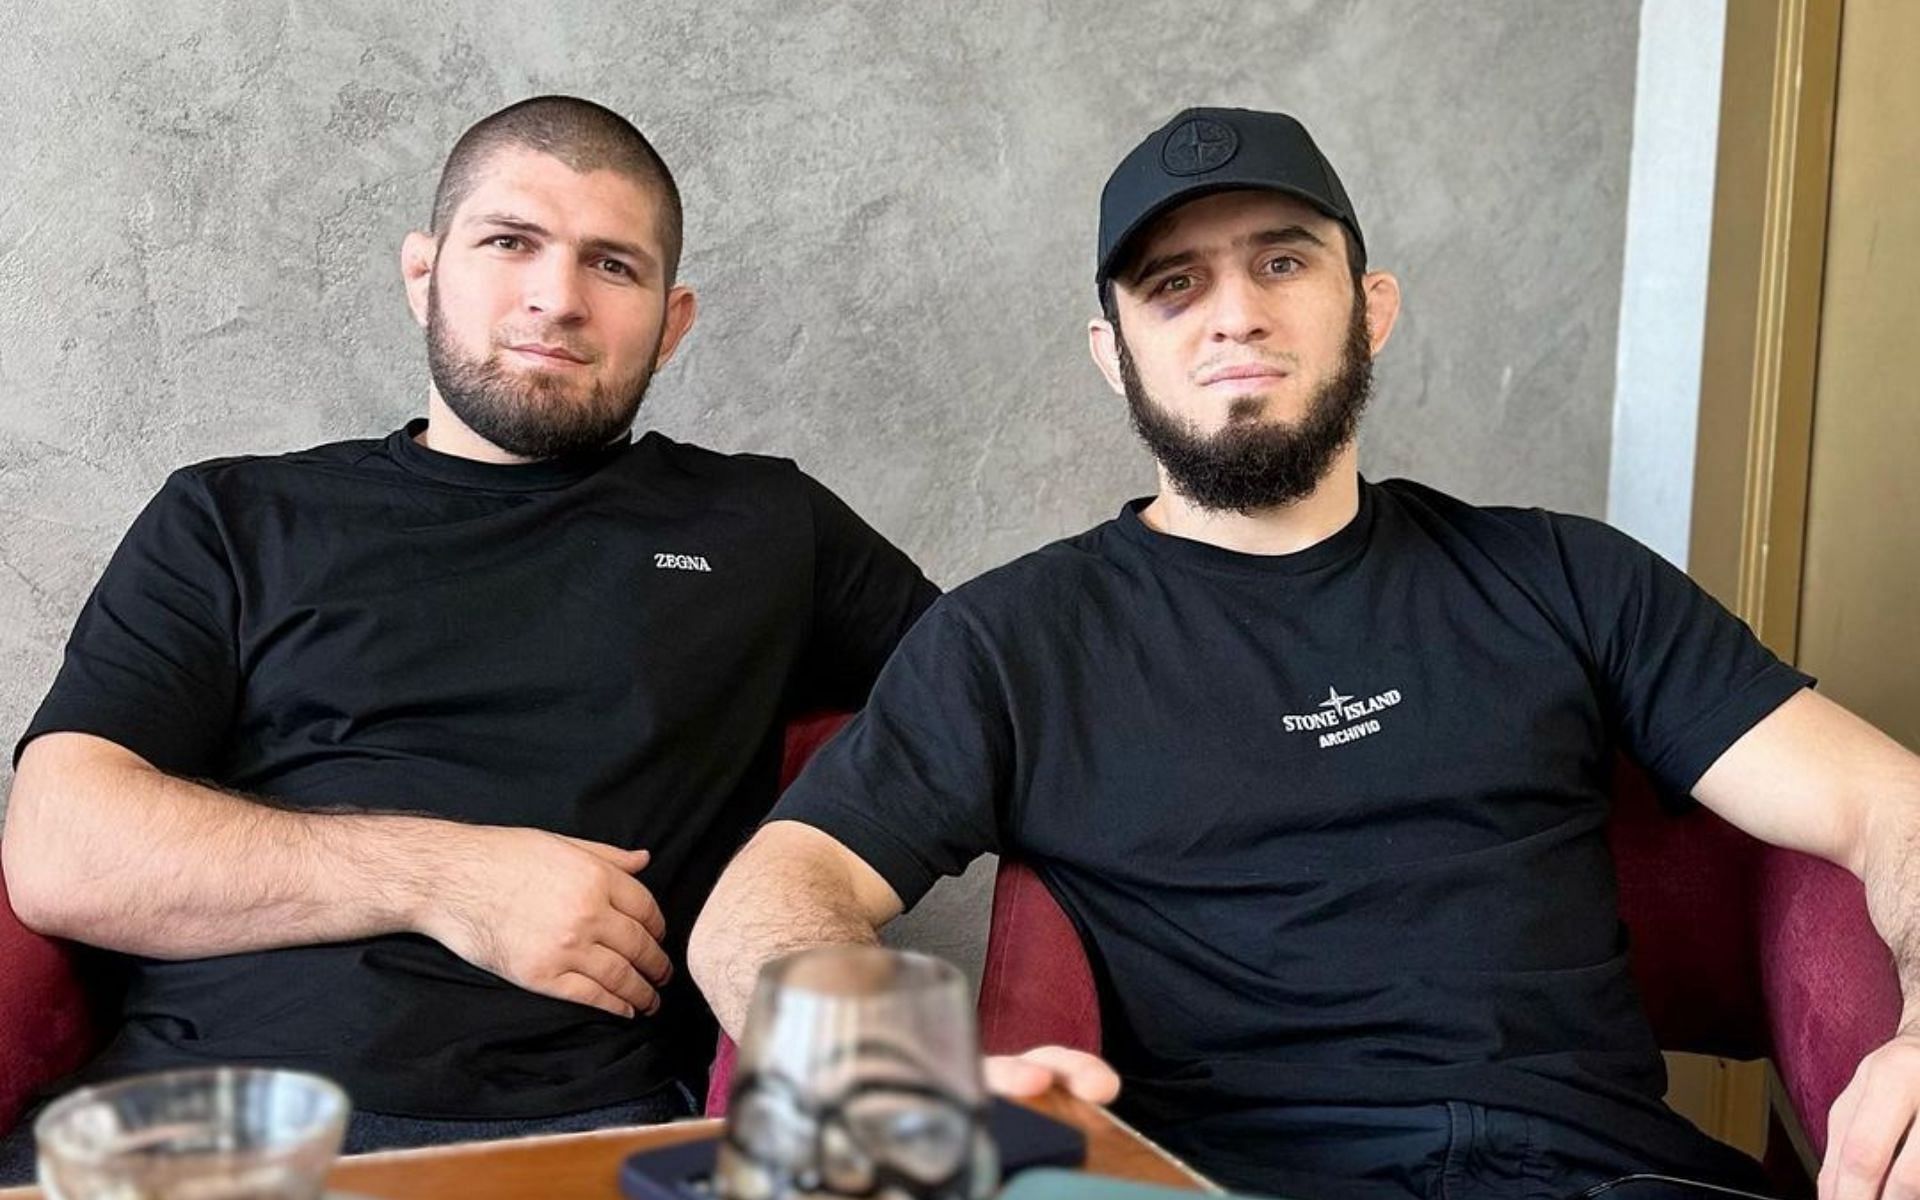 Khabib Nurmagomedov (left) supports Islam Makhachev (right) in a social media post [Image via: @khabib_nurmagomedov on Instagram]